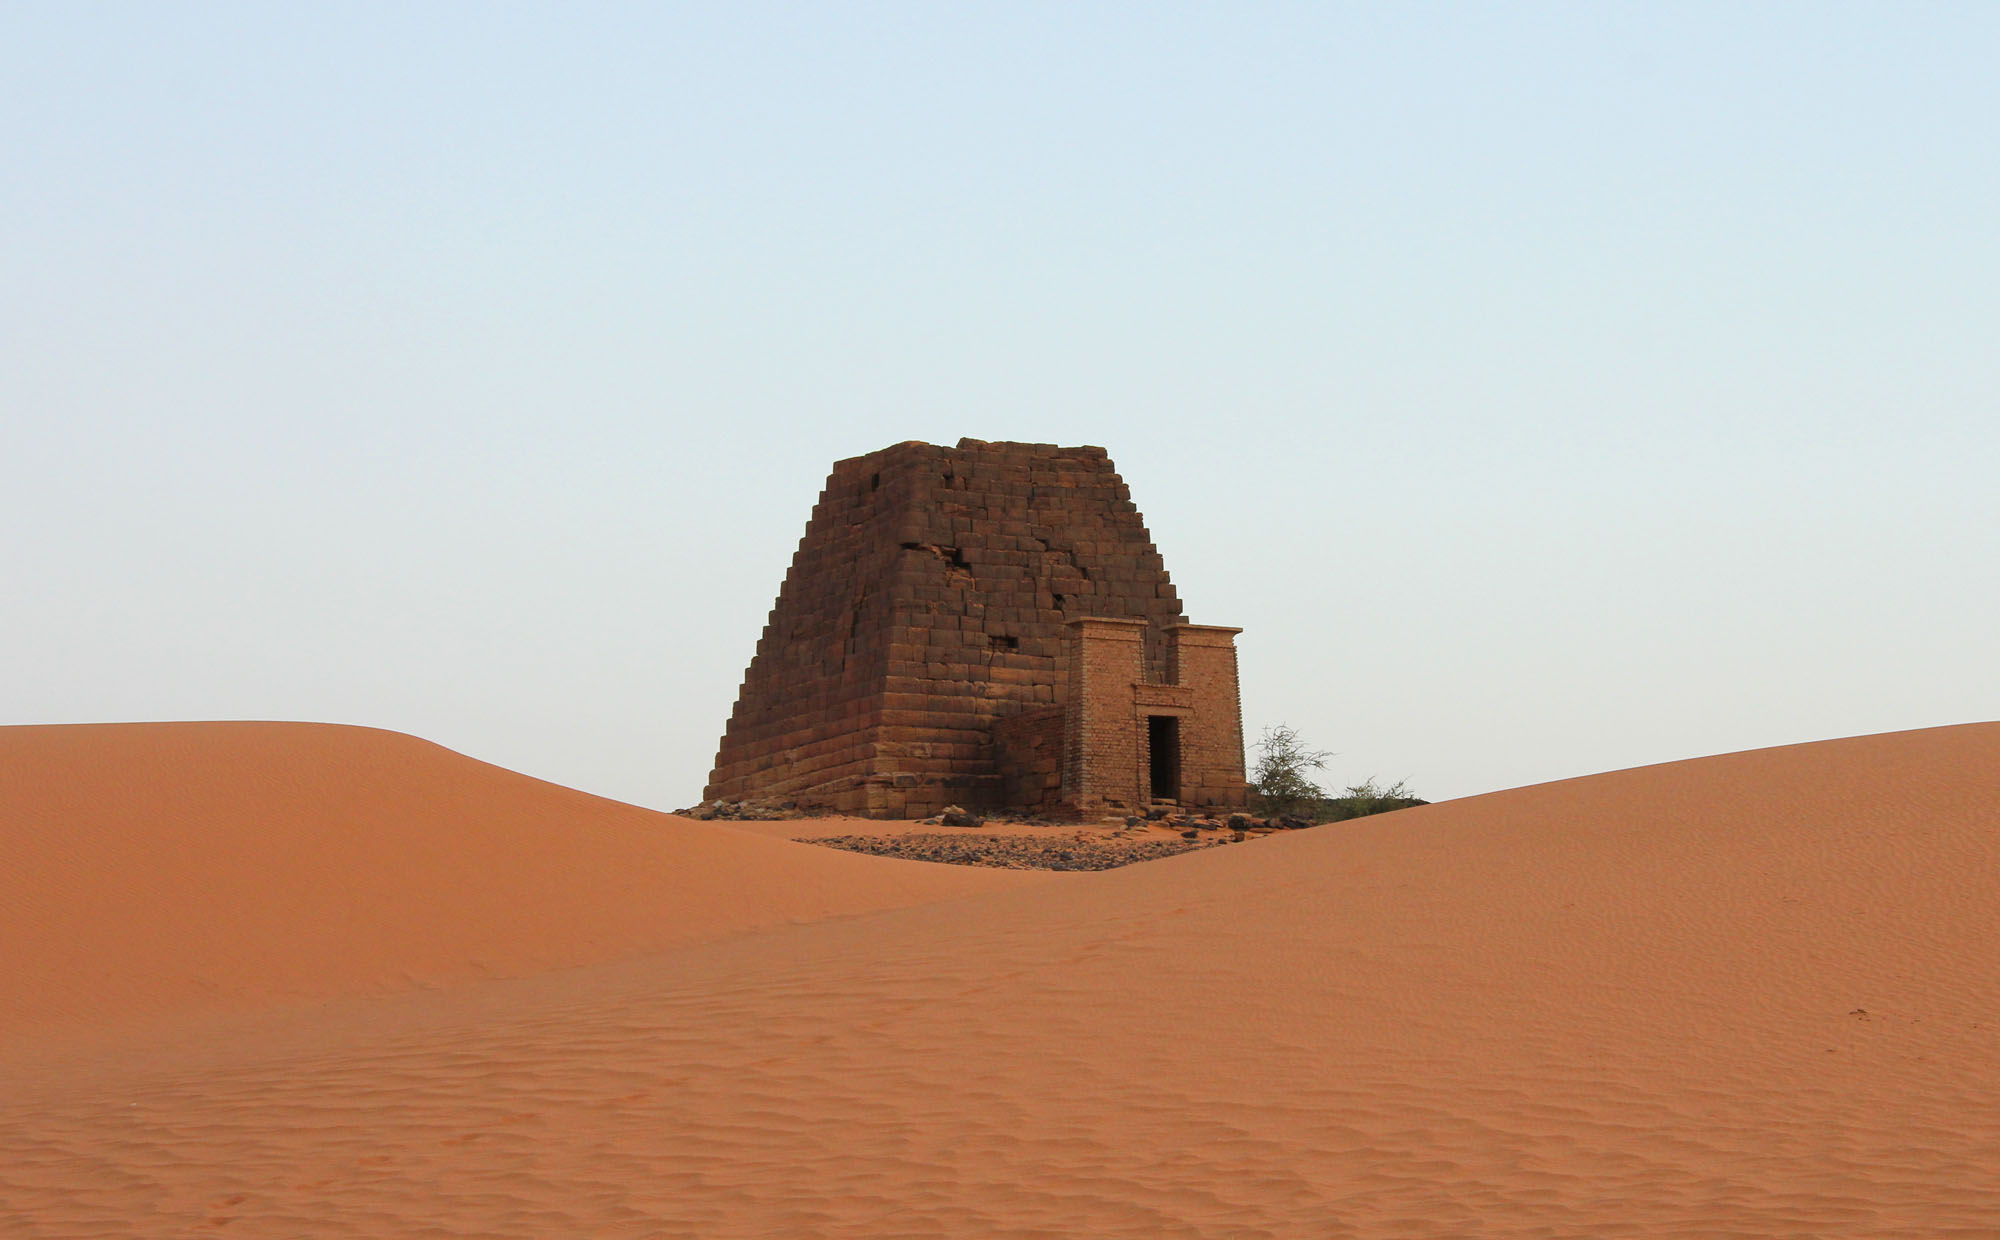 Sudan pyramids